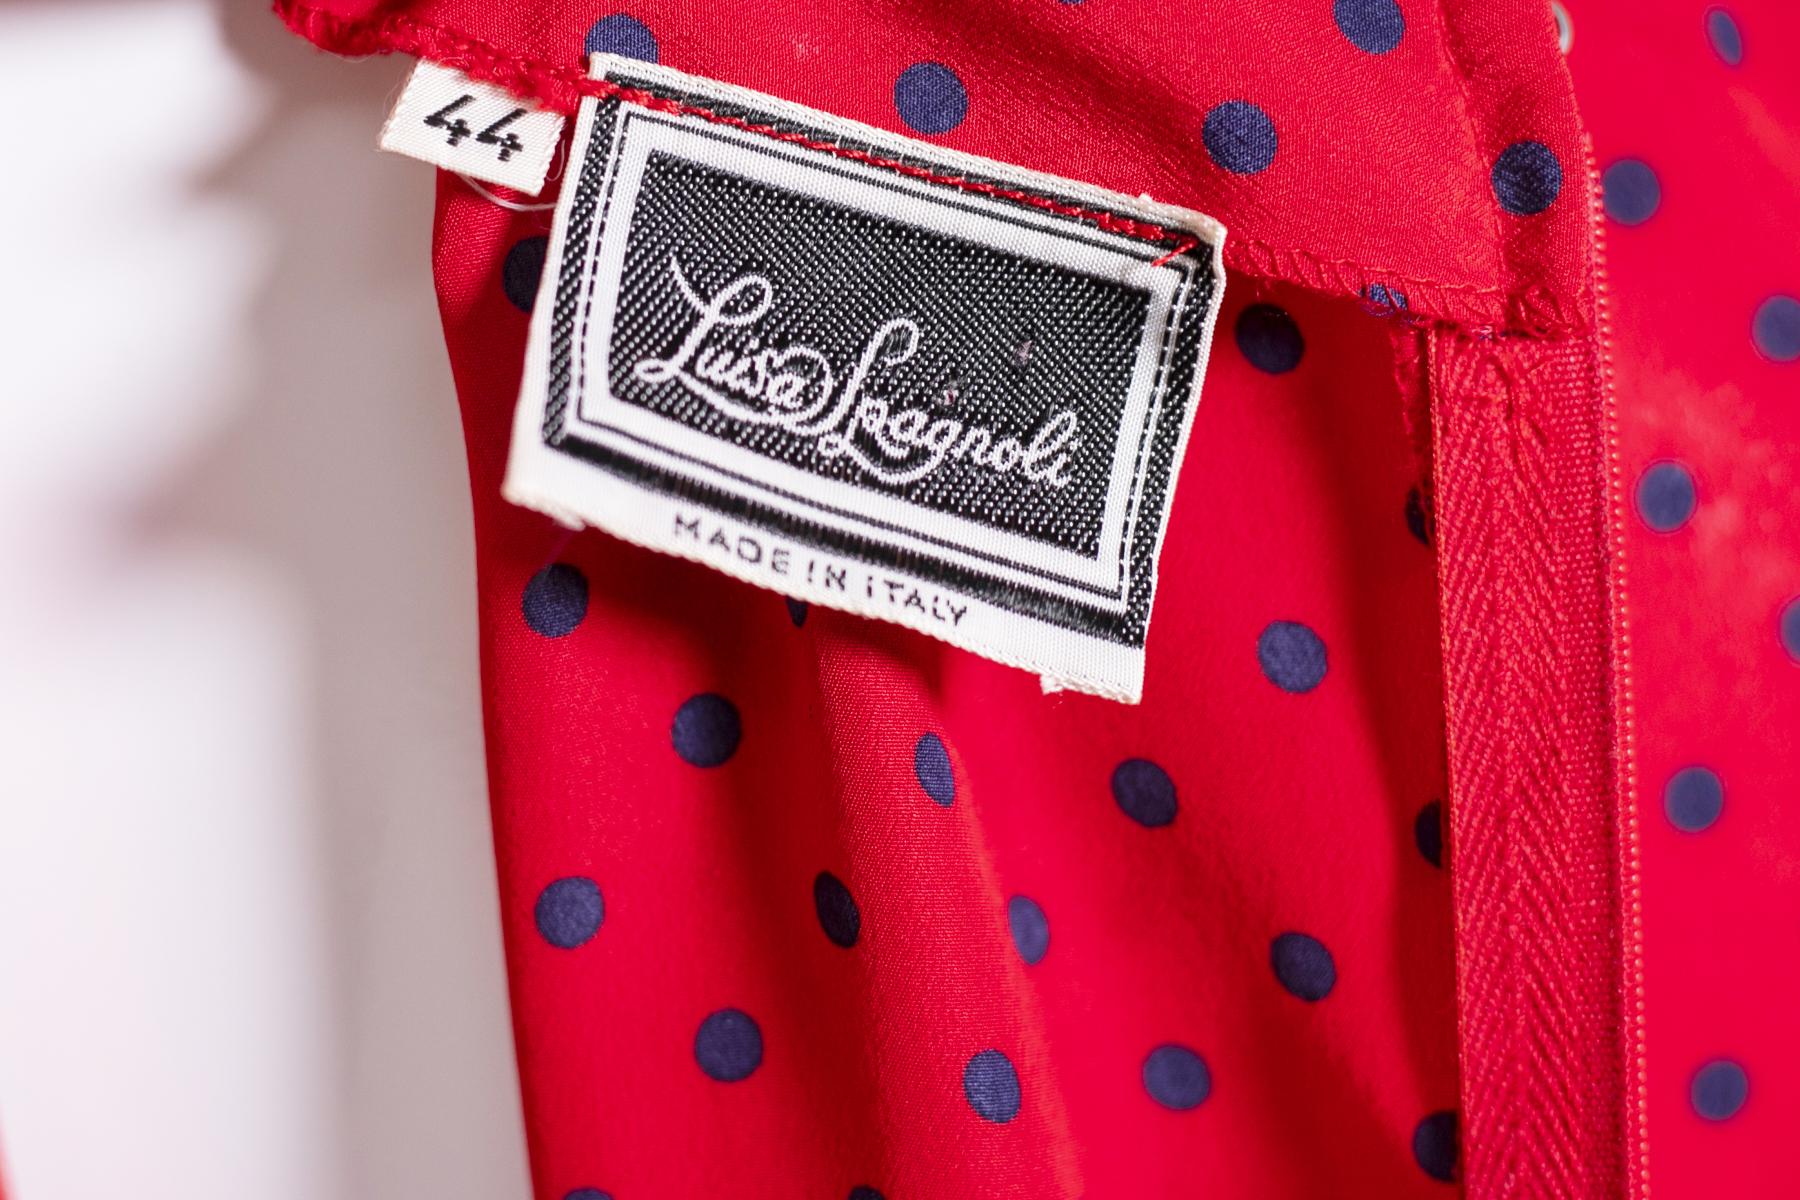 Schöne Vintage-Kleid unterzeichnet Luisa Spagnoli, rote Farbe Hintergrund und kleine blaue Pois.
Das Kleid Luisa Spagnoli ist 80er Jahre Stil, hat einen 